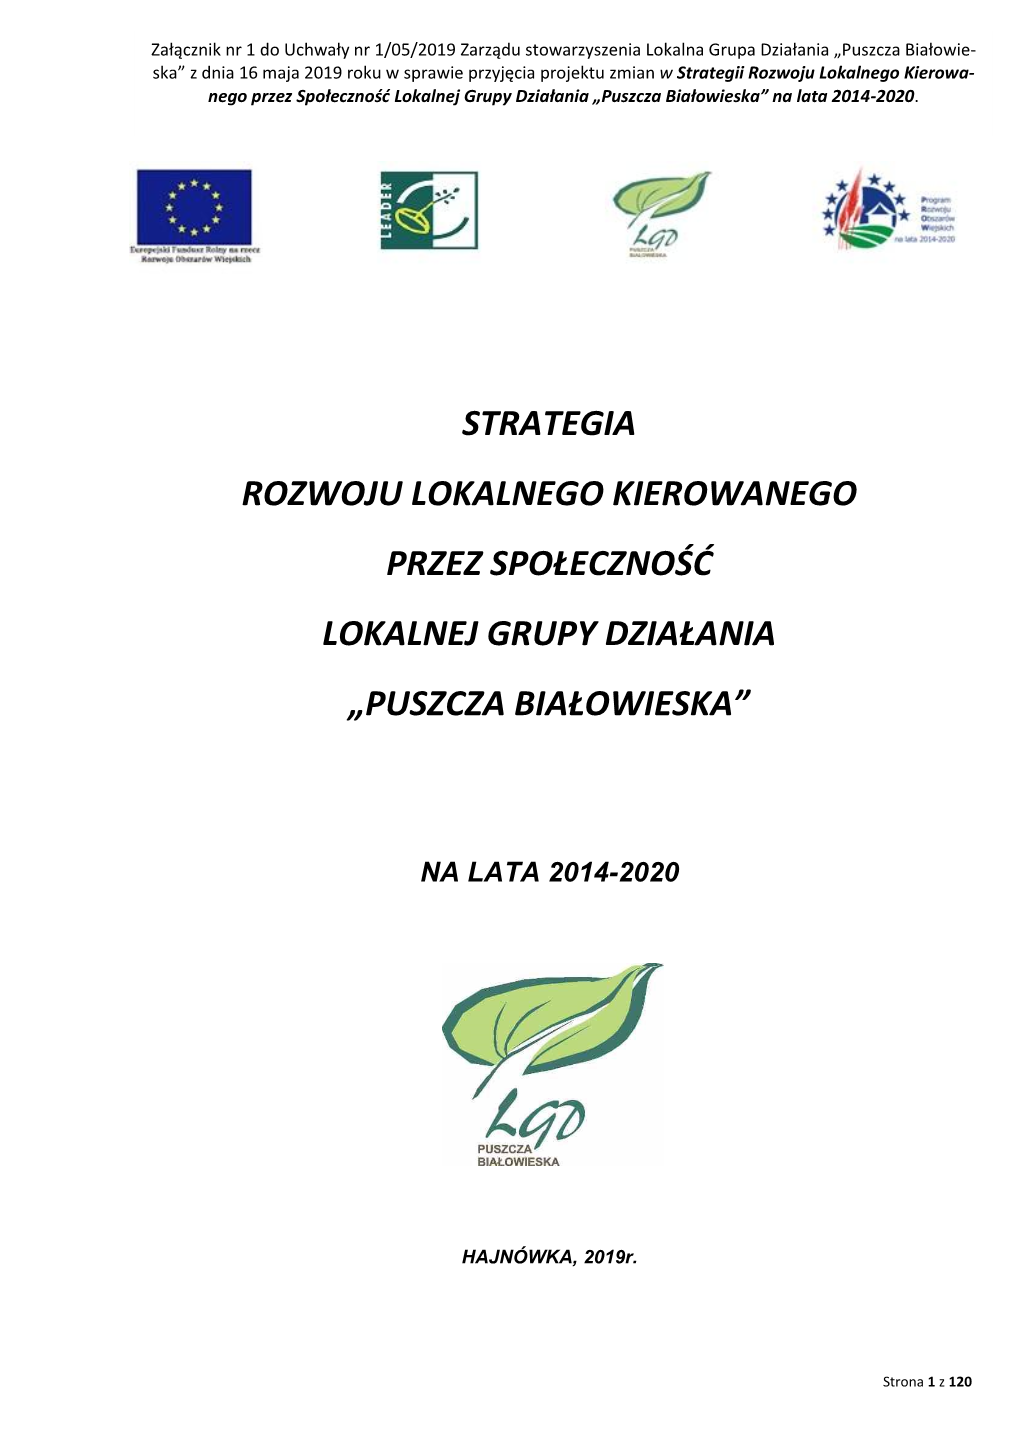 Strategia Rozwoju Lokalnego Kierowanego Przez Społeczność Lokalnej Grupy Działania „Puszcza Białowieska”